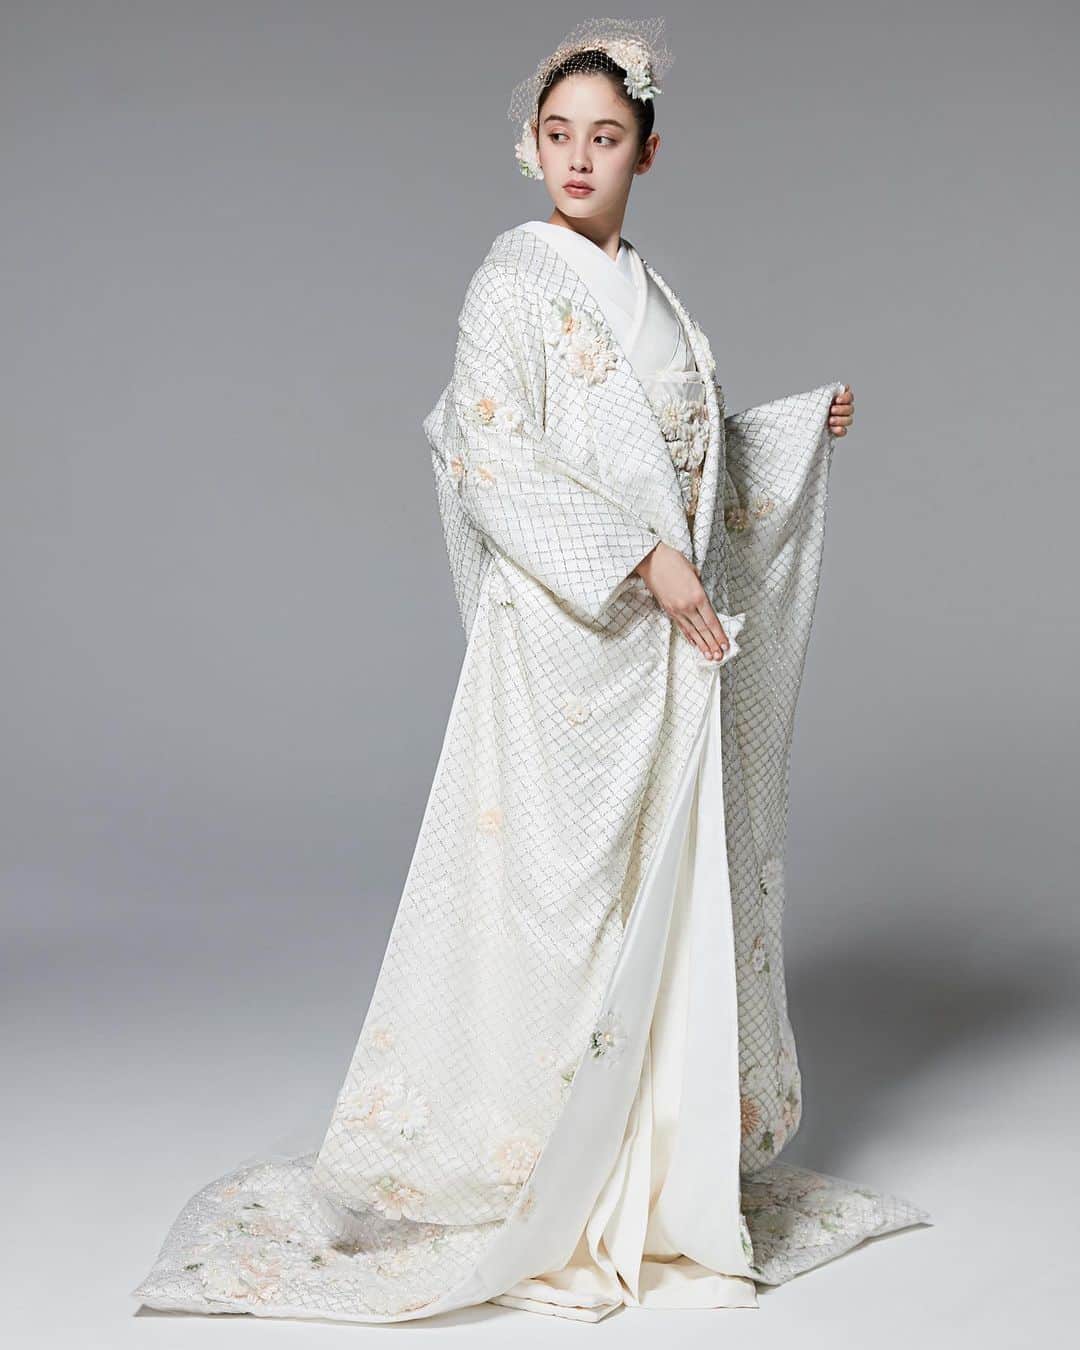 東京會舘本舘ウエディングのインスタグラム：「@tokyokaikan_wedding .——————————. * 日本古来から伝わる花嫁衣装 白無垢に今のトレンドをプラスして レトロモダンな装いに。  人とは違うコーディネートを叶えられたい 花嫁さまにおすすめの1着です。  Dress...@takamibridal_costume #TAKAMIBRIDAL #タカミブライダル * ——————————. #東京會舘 #tokyo #関東花嫁 #weddingdress #東京花嫁 #wedding #dress #ウェディングドレス #プレ花嫁 #卒花 #結婚式場 #日本中のプレ花嫁さんと繋がりたい #結婚式準備 #ウェディングレポ #ブライダルフェア #チャペル #結婚式 #パーティ #披露宴 #weddingparty #結婚式場探し #大正ロマン #ウェディング #式場探し #式場見学 #白無垢 #和装 #和婚」